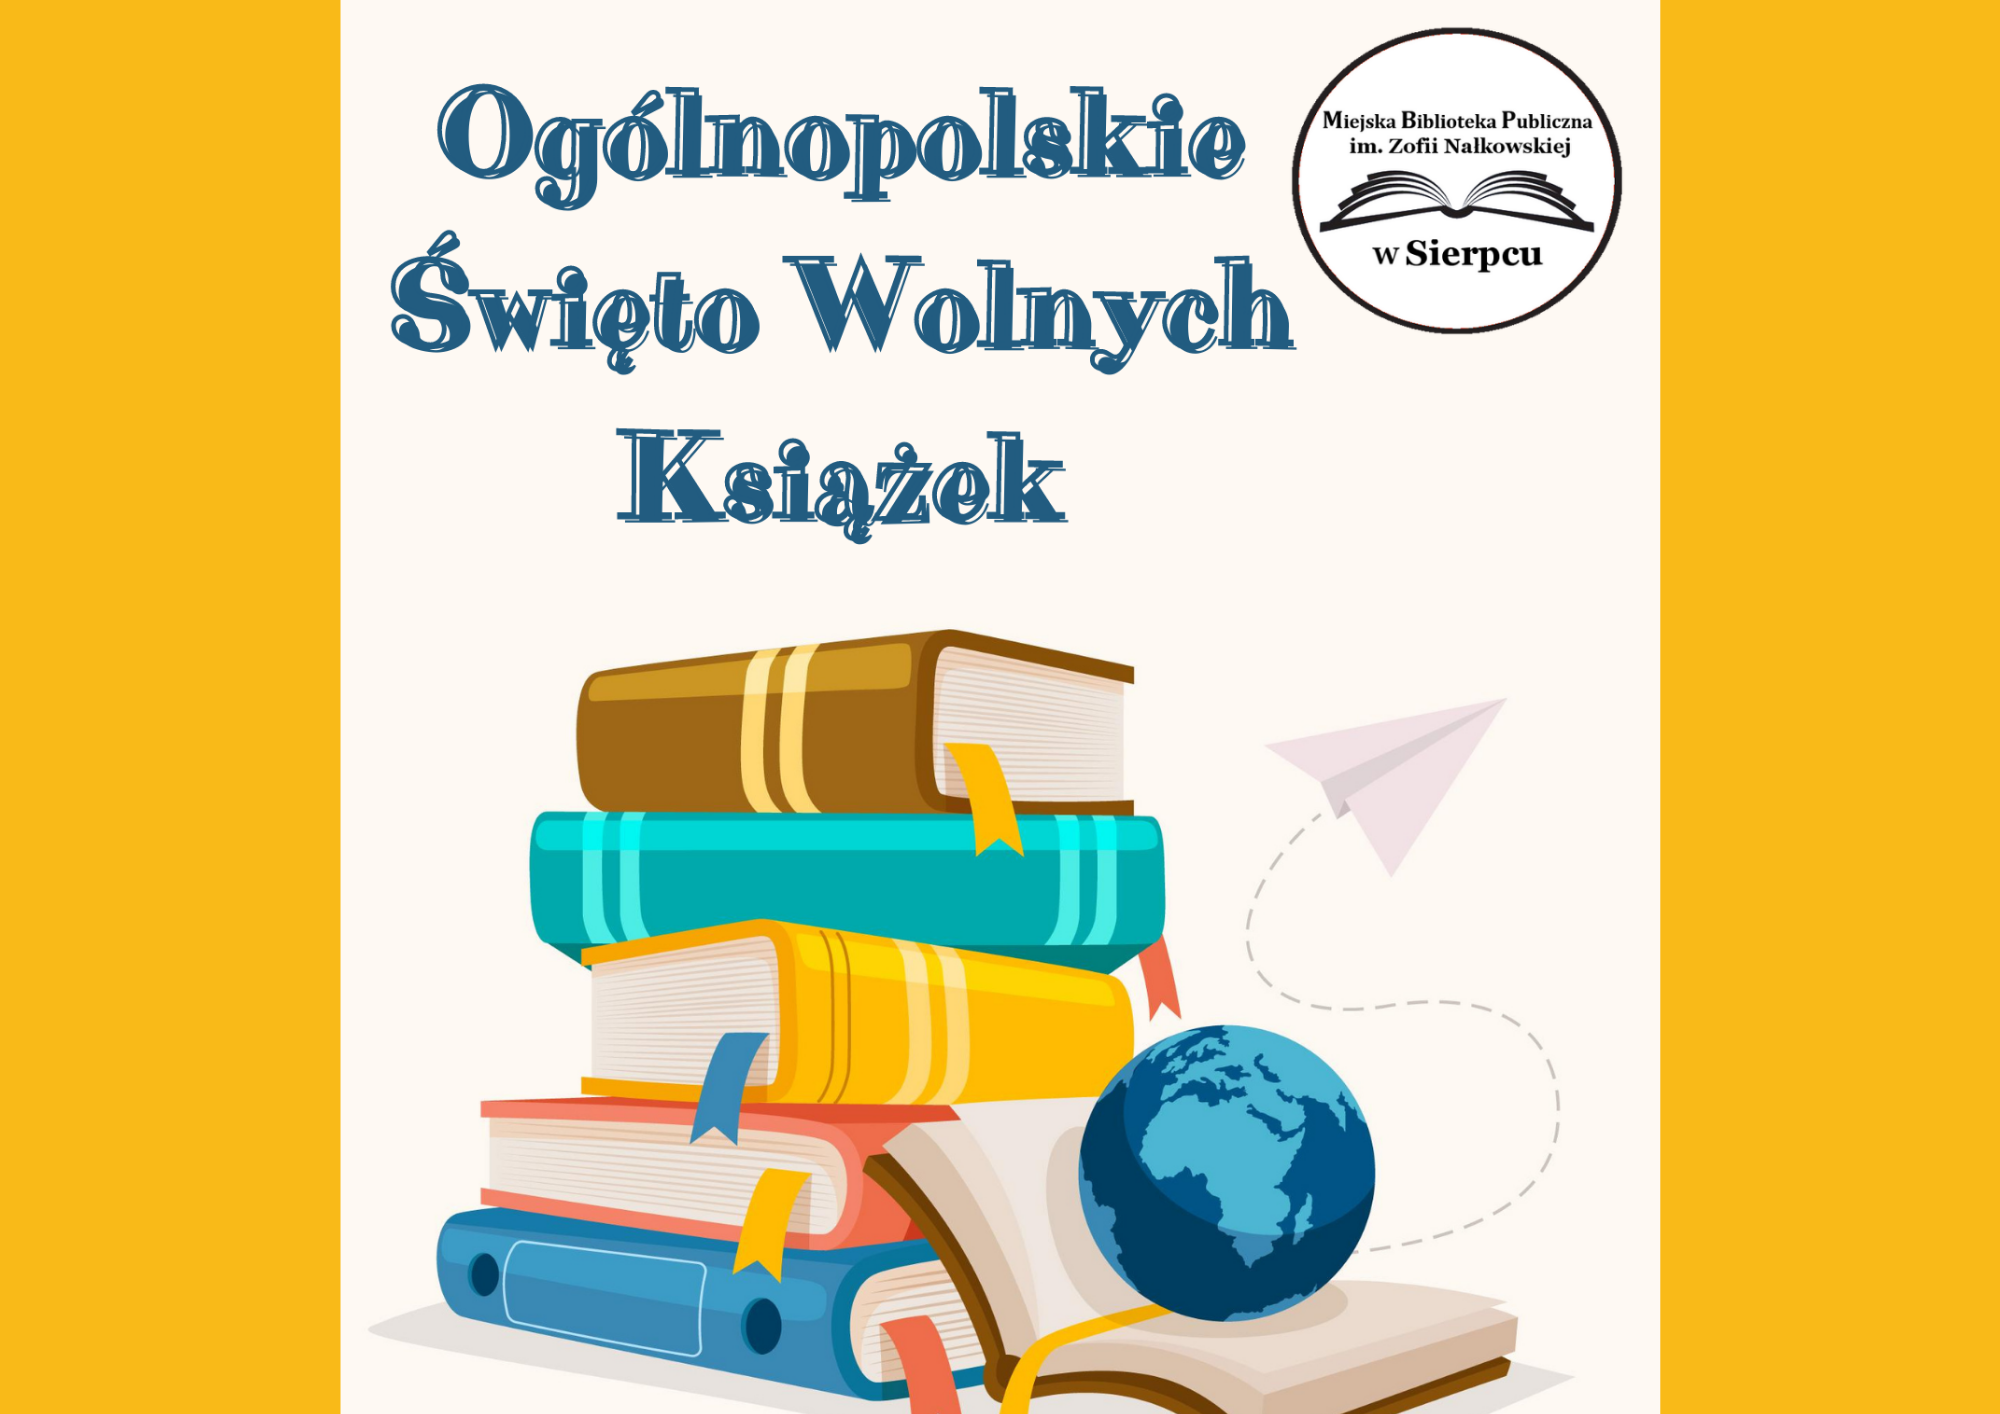 Plakat promocyjny wydarzenia "Ogólnopolskie Święto wolnych książek"